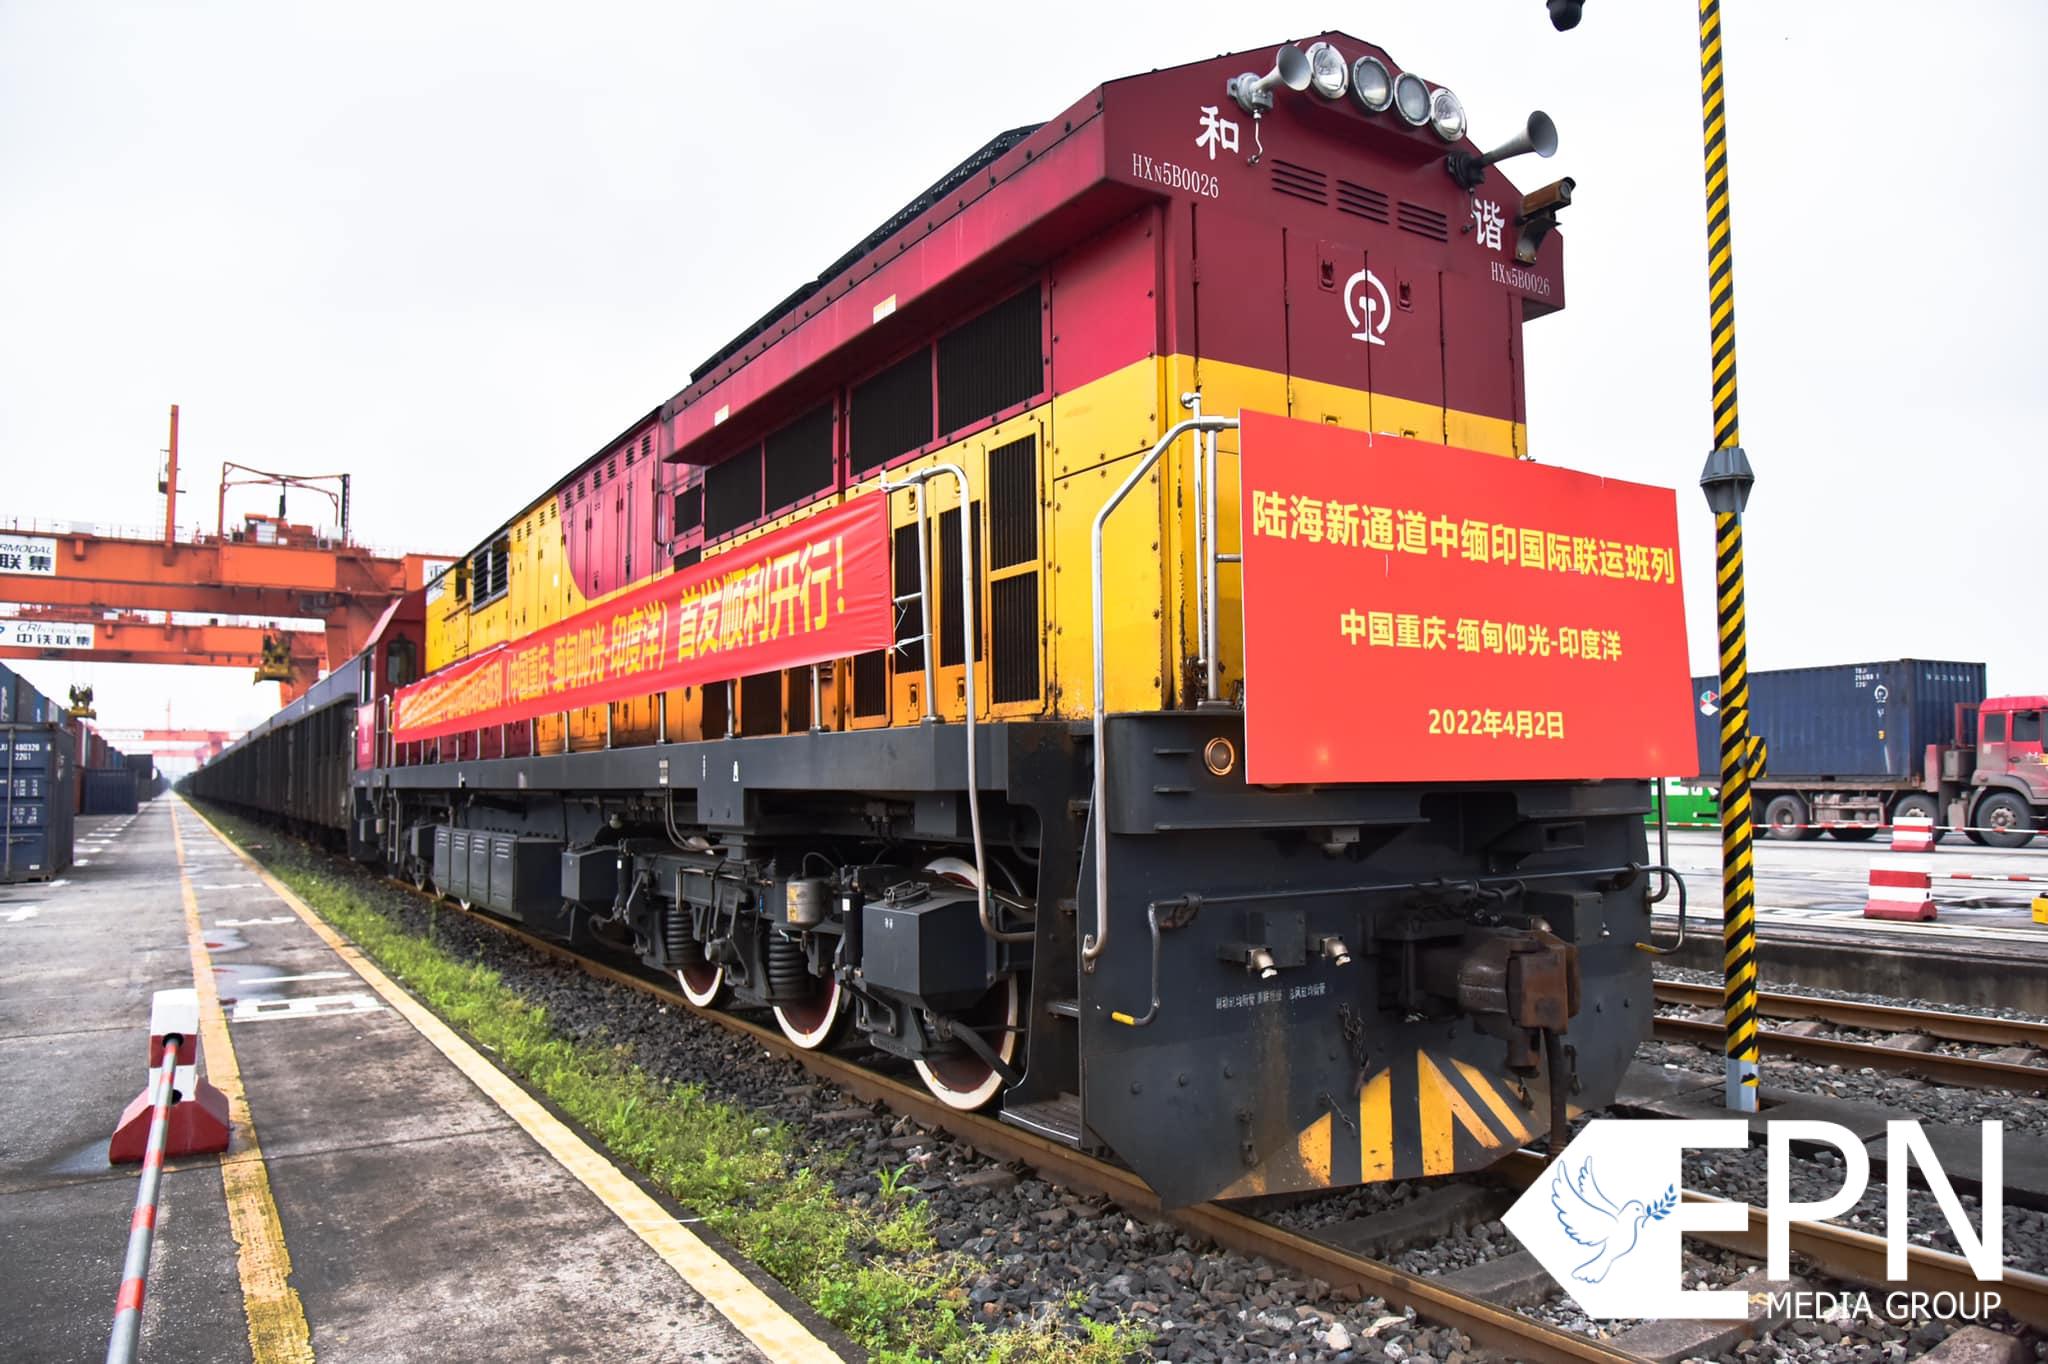 တရုတ်-မြန်မာ-အိန္ဒိယ အပြည်ပြည်ဆိုင်ရာ ကုန်းလမ်း-ရေကြောင်းဖြတ်သန်းရထားလမ်းသစ် ပထမဆုံးအကြိမ် စတင်